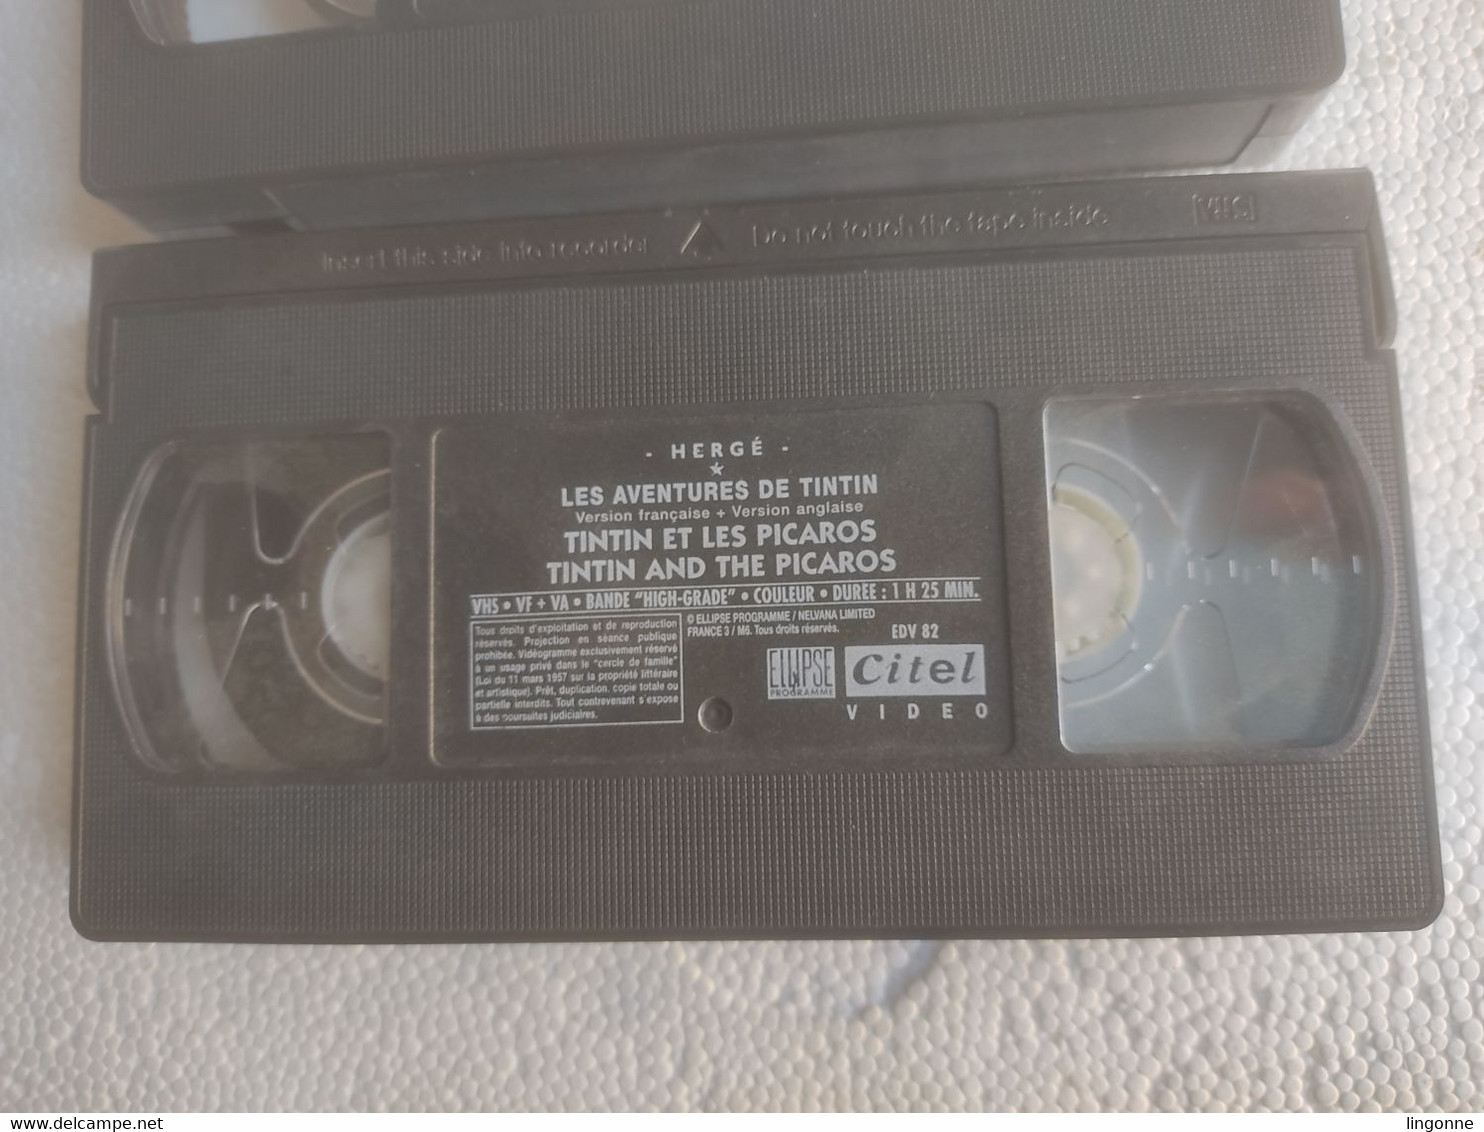 1999 TINTIN en AMERIQUE L'OREILLE CASSEE TINTIN et les PICAROS COFFRET de 3 VHS Secam EDITION SPECIALE